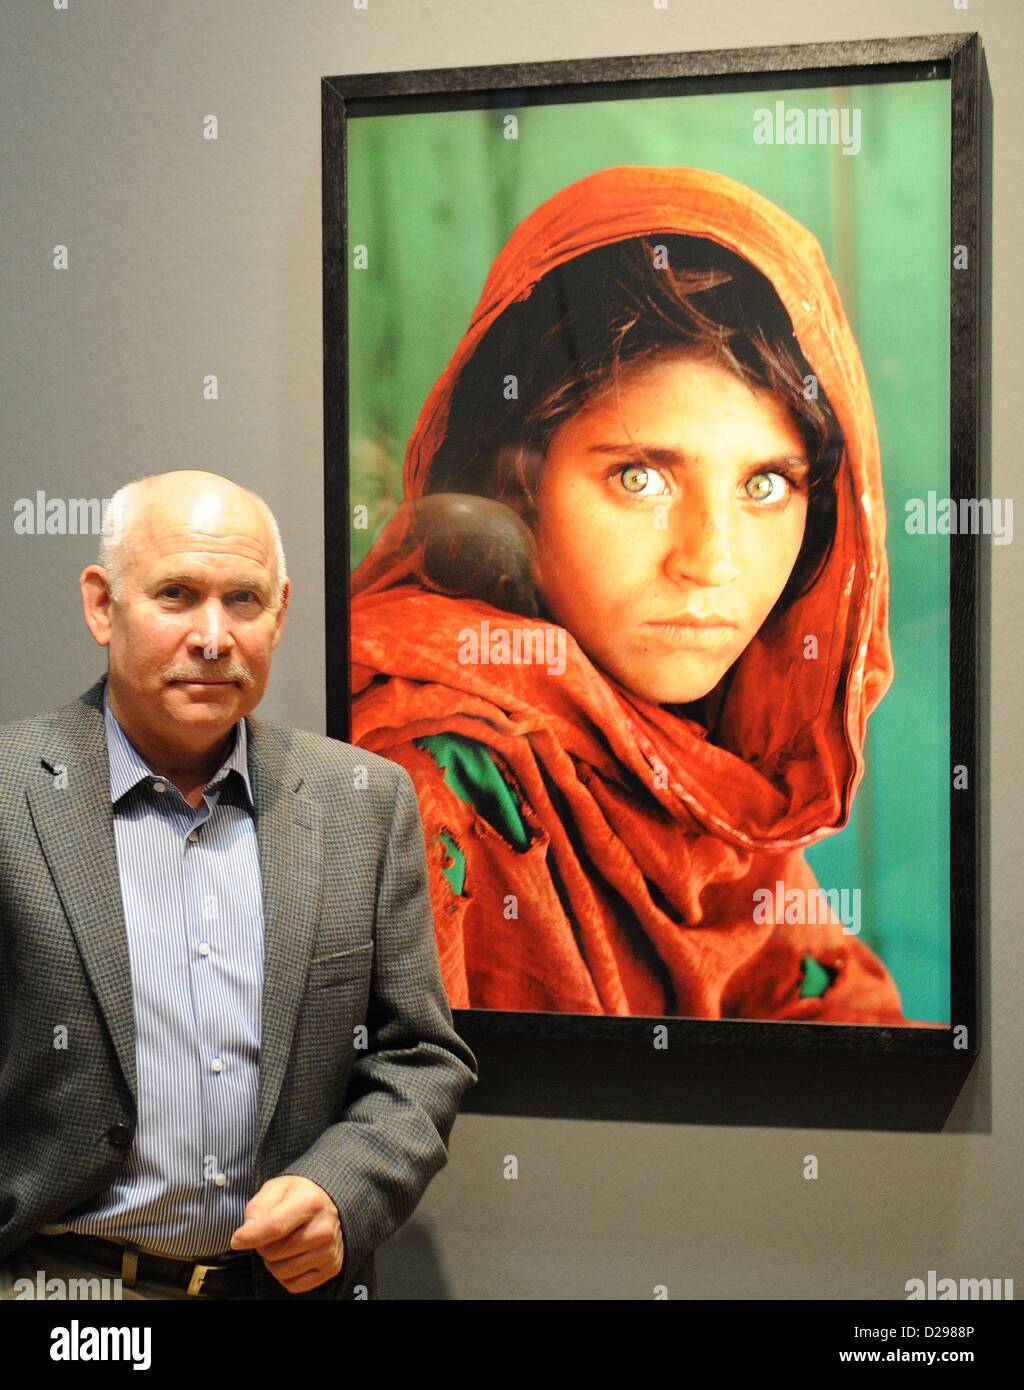 Steve McCurry, photographe américain pose devant sa photo 'fille afghane' (Peshawar, Pakistan,1984) au cours d'une conférence de presse au Kunstmuseum de Wolfsburg, Allemagne, 17 janvier 2013. L'exhibiiton montre quelques 100 photographies provenant des pays asiatiques qui ont été prises entre 1980 et 2011. Photo : HOLGER HOLLEMANN Banque D'Images